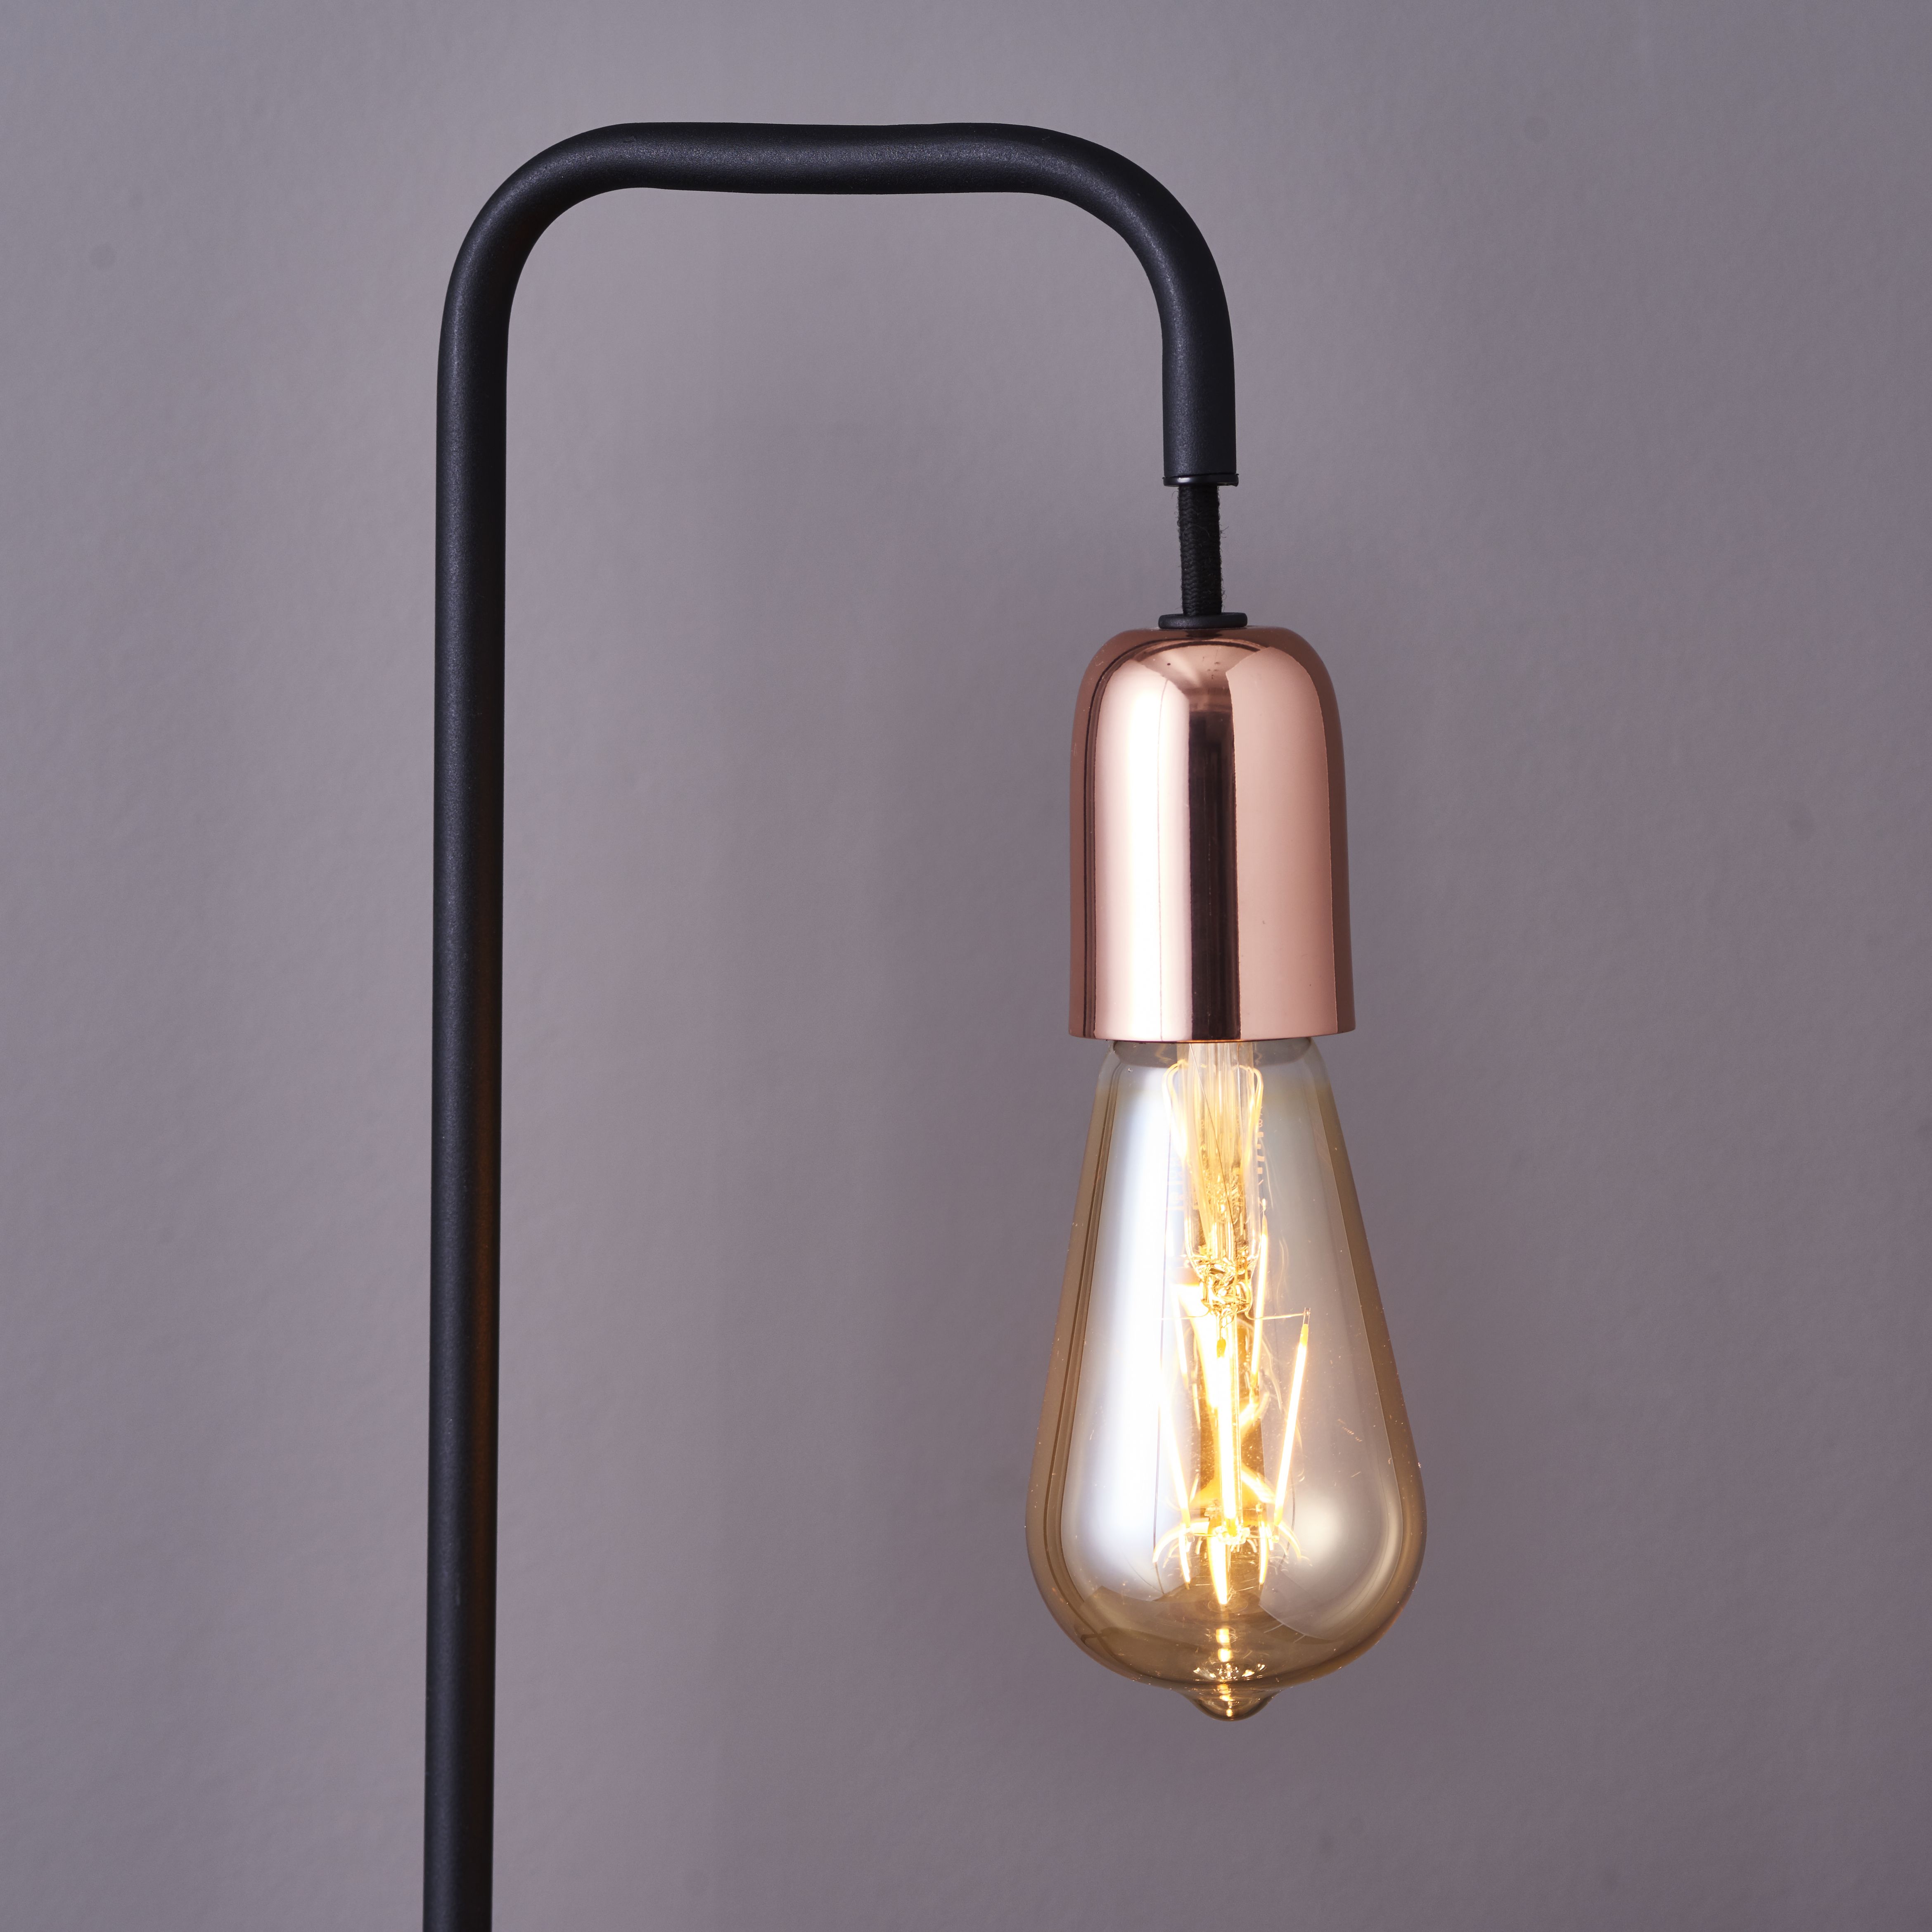 Colours Detroit Industrial Matt Black & copper Table lamp